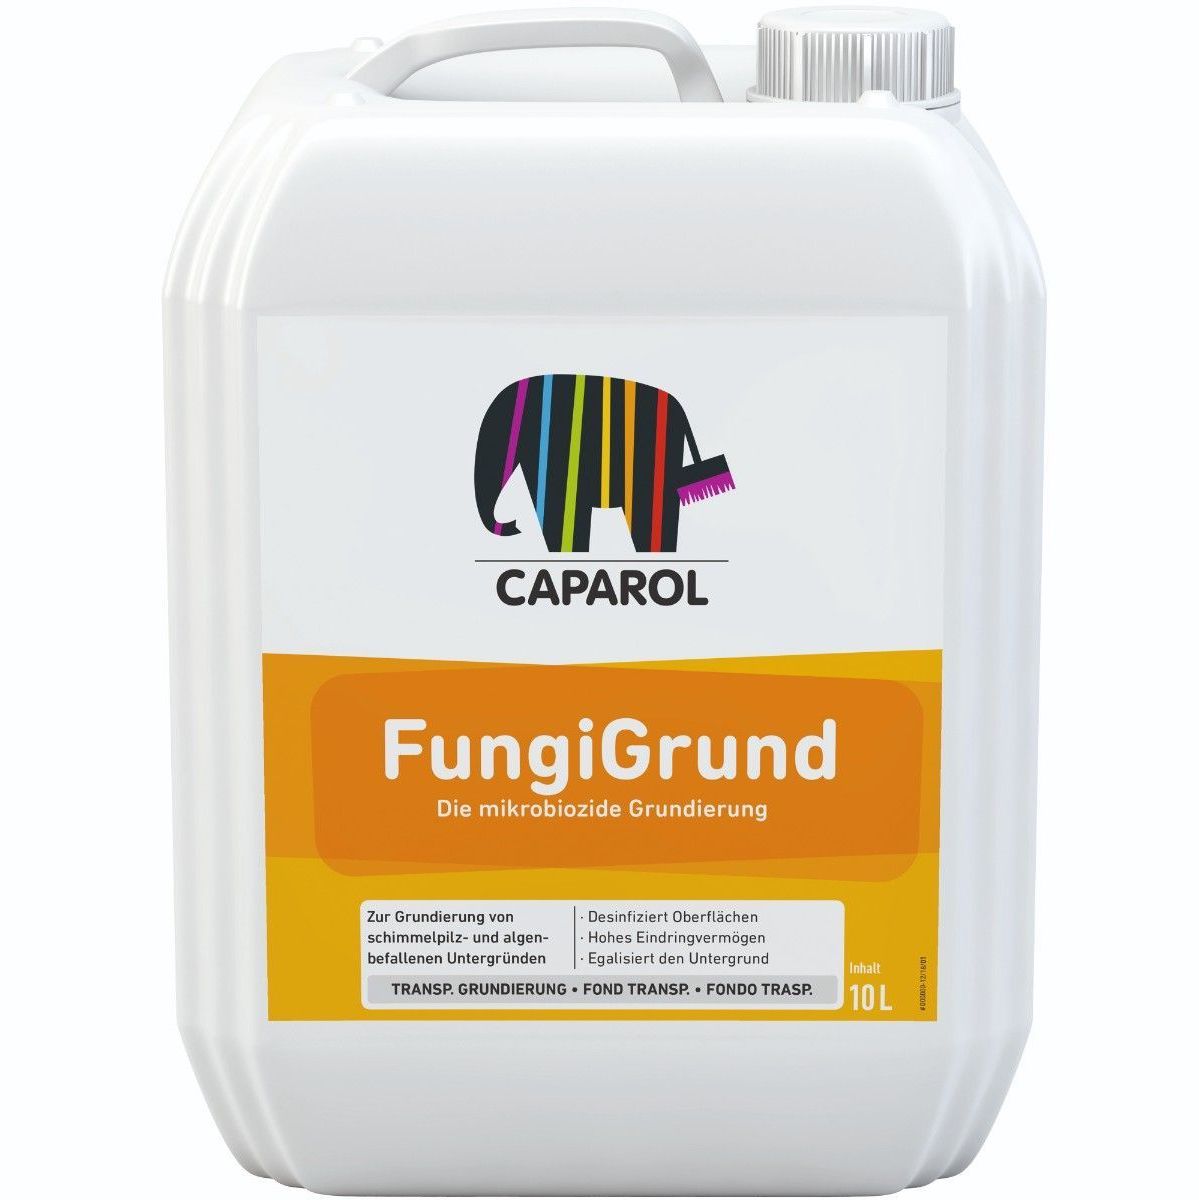 Caparol FungiGrund, 10L